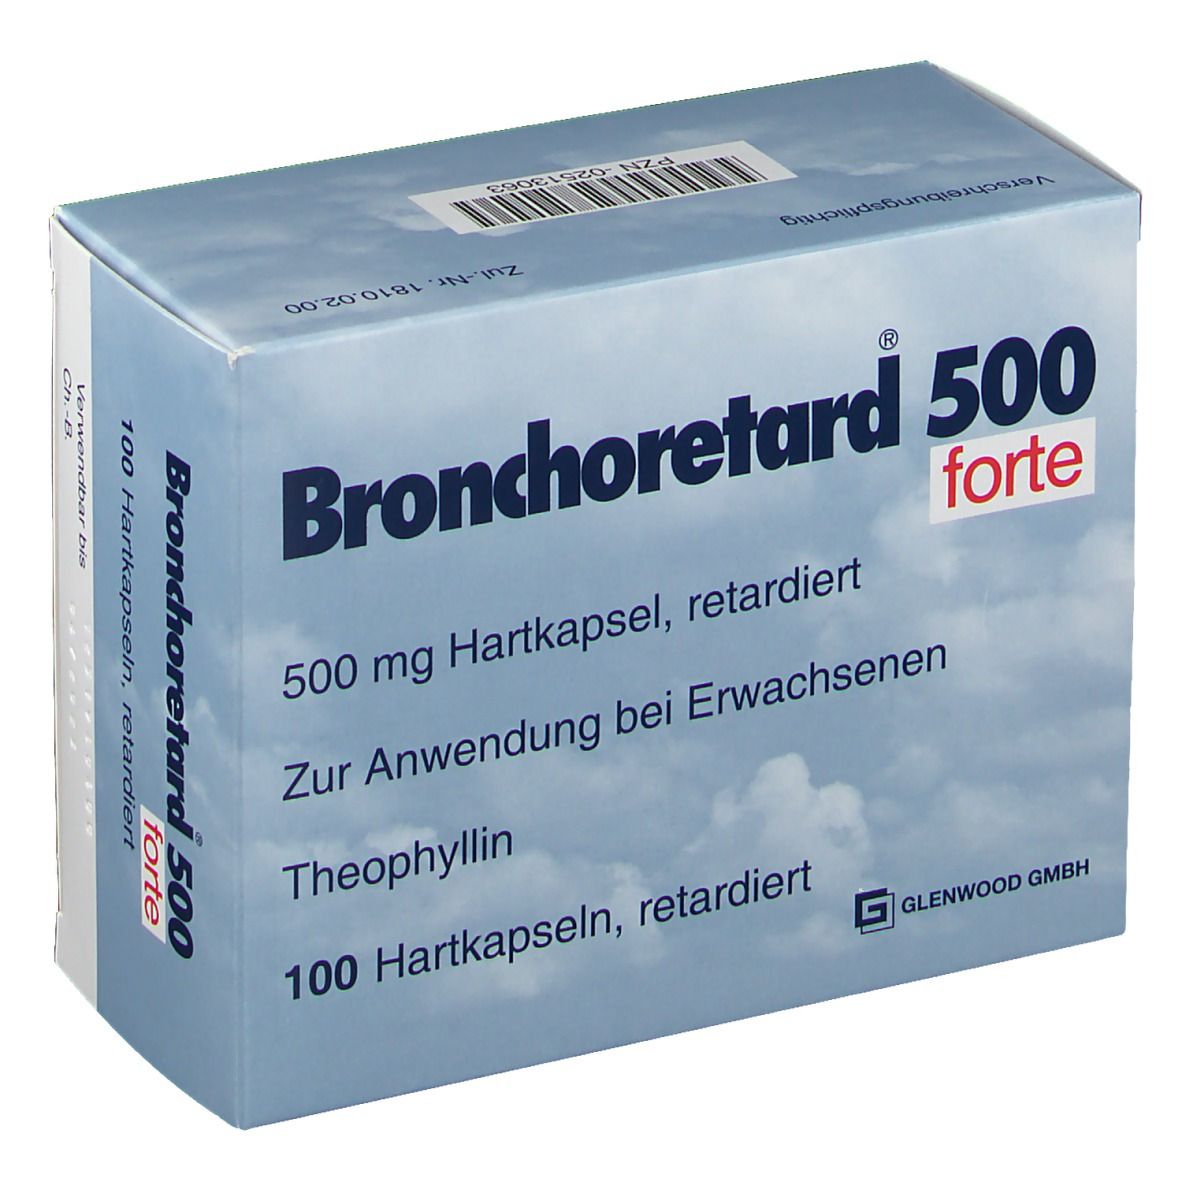 Bronchoretard® 500 forte